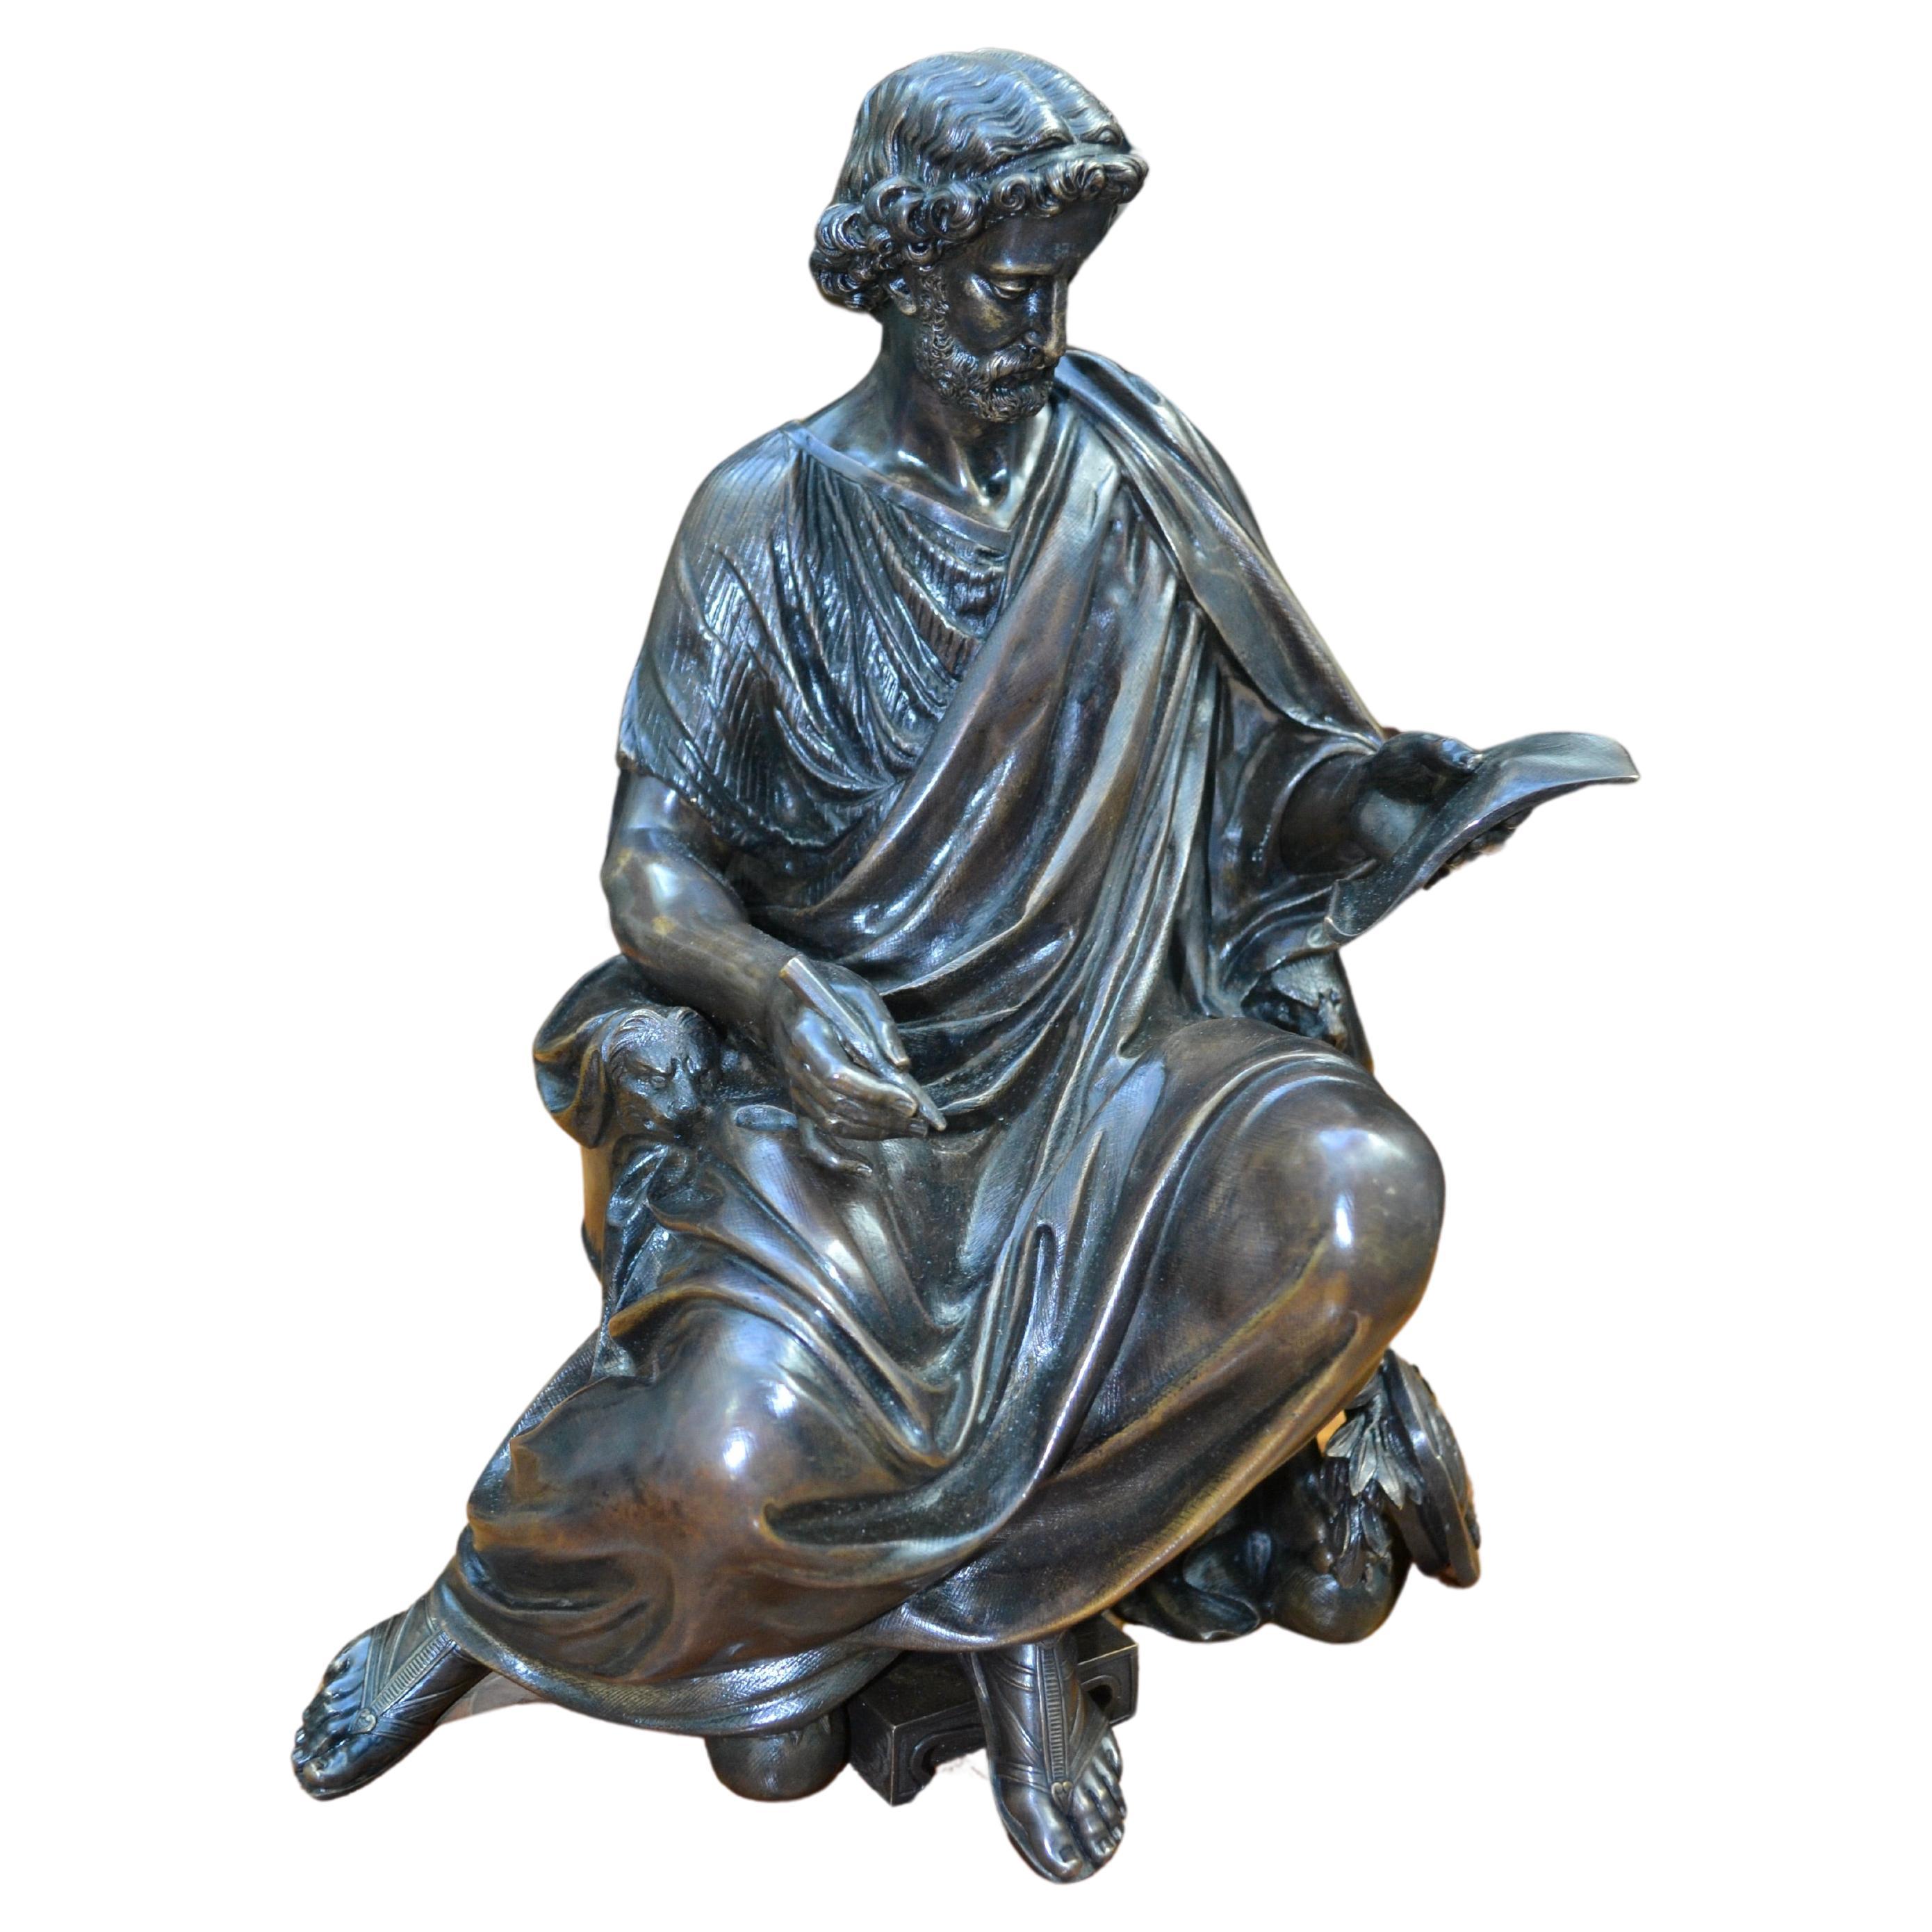 Patinierte Bronzestatue eines sitzenden Menschen  Griechisch  Gelehrter signiert Moreau